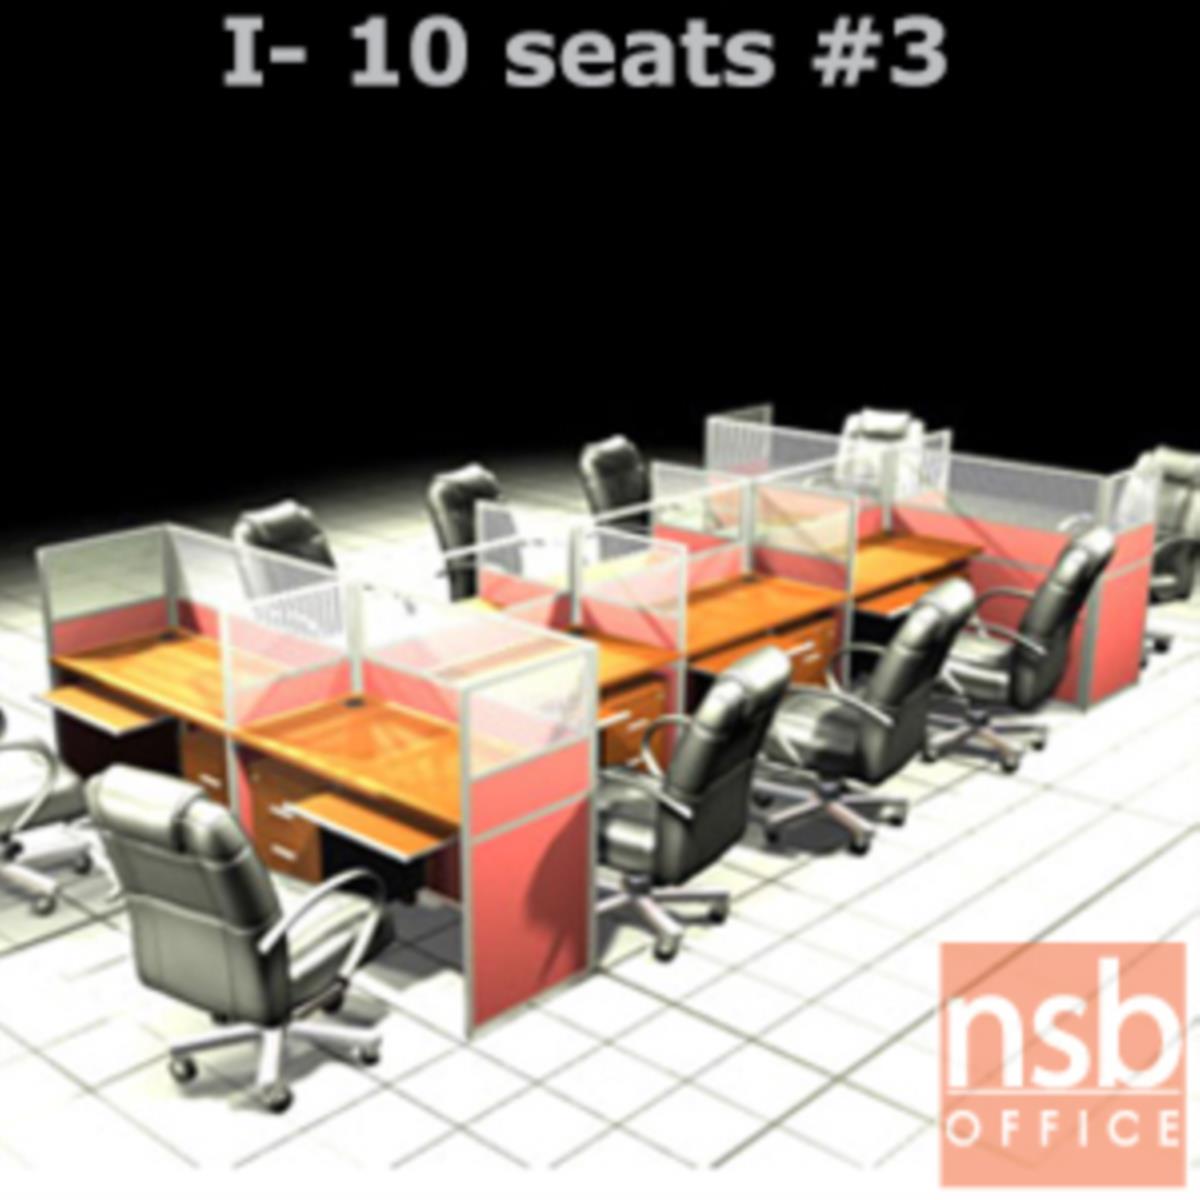 A04A099:ชุดโต๊ะทำงานกลุ่ม 10 ที่นั่ง   ขนาดรวม 488W*246D cm. พร้อมพาร์ทิชั่นครึ่งกระจกขัดลาย